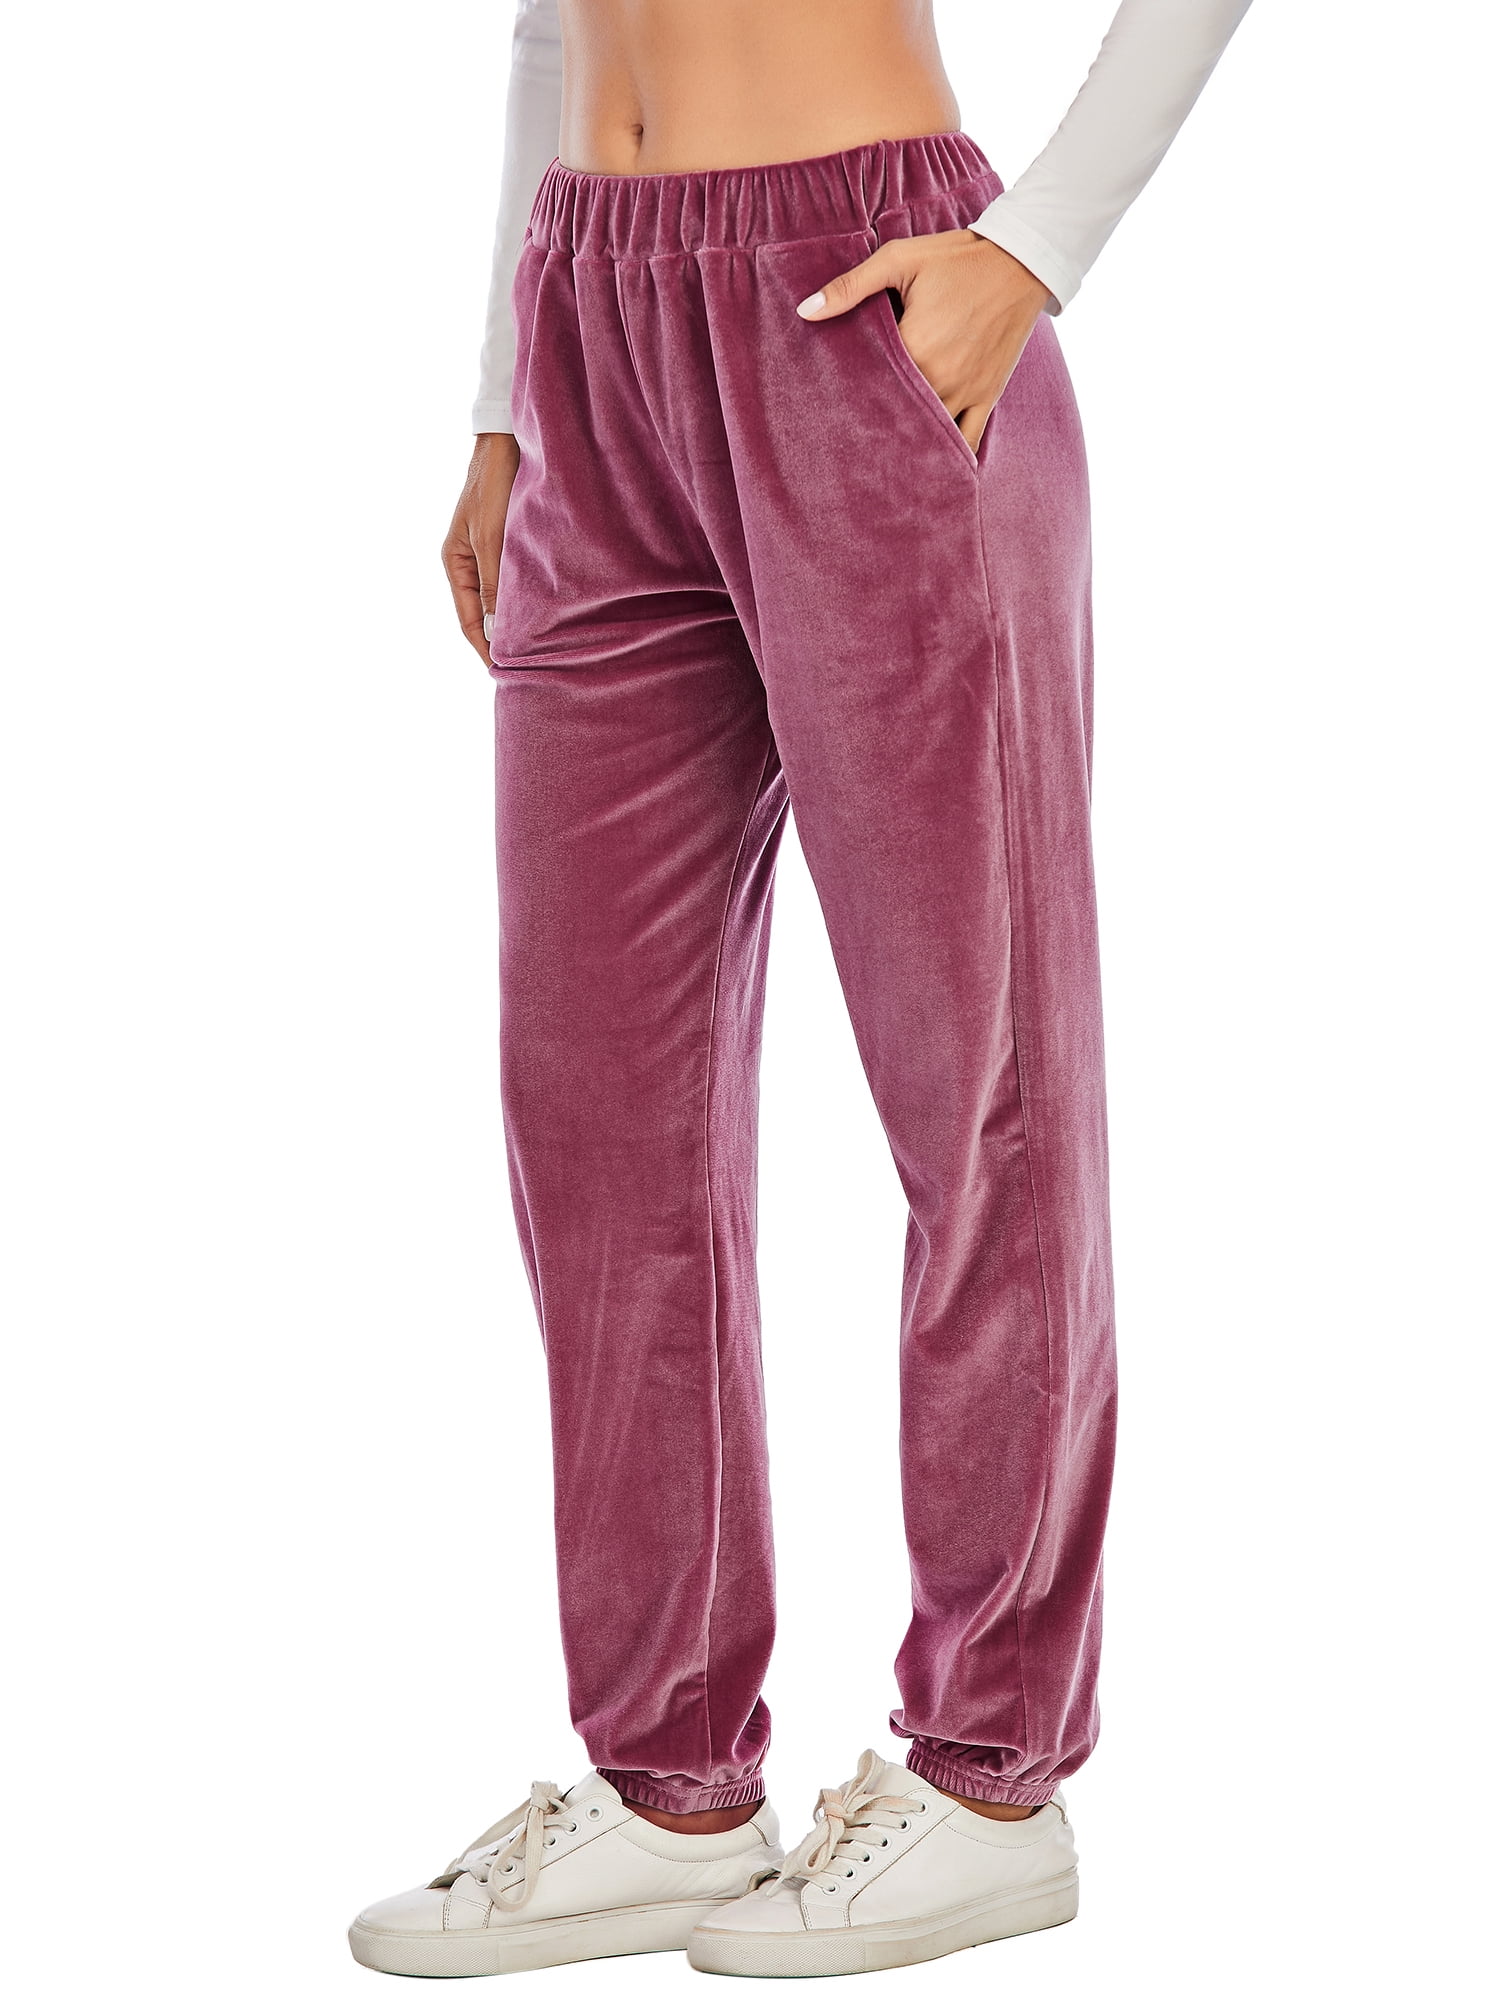 Buy Navy Velvet Embroidered Flared Pants Online At Best Price - Sassafras.in